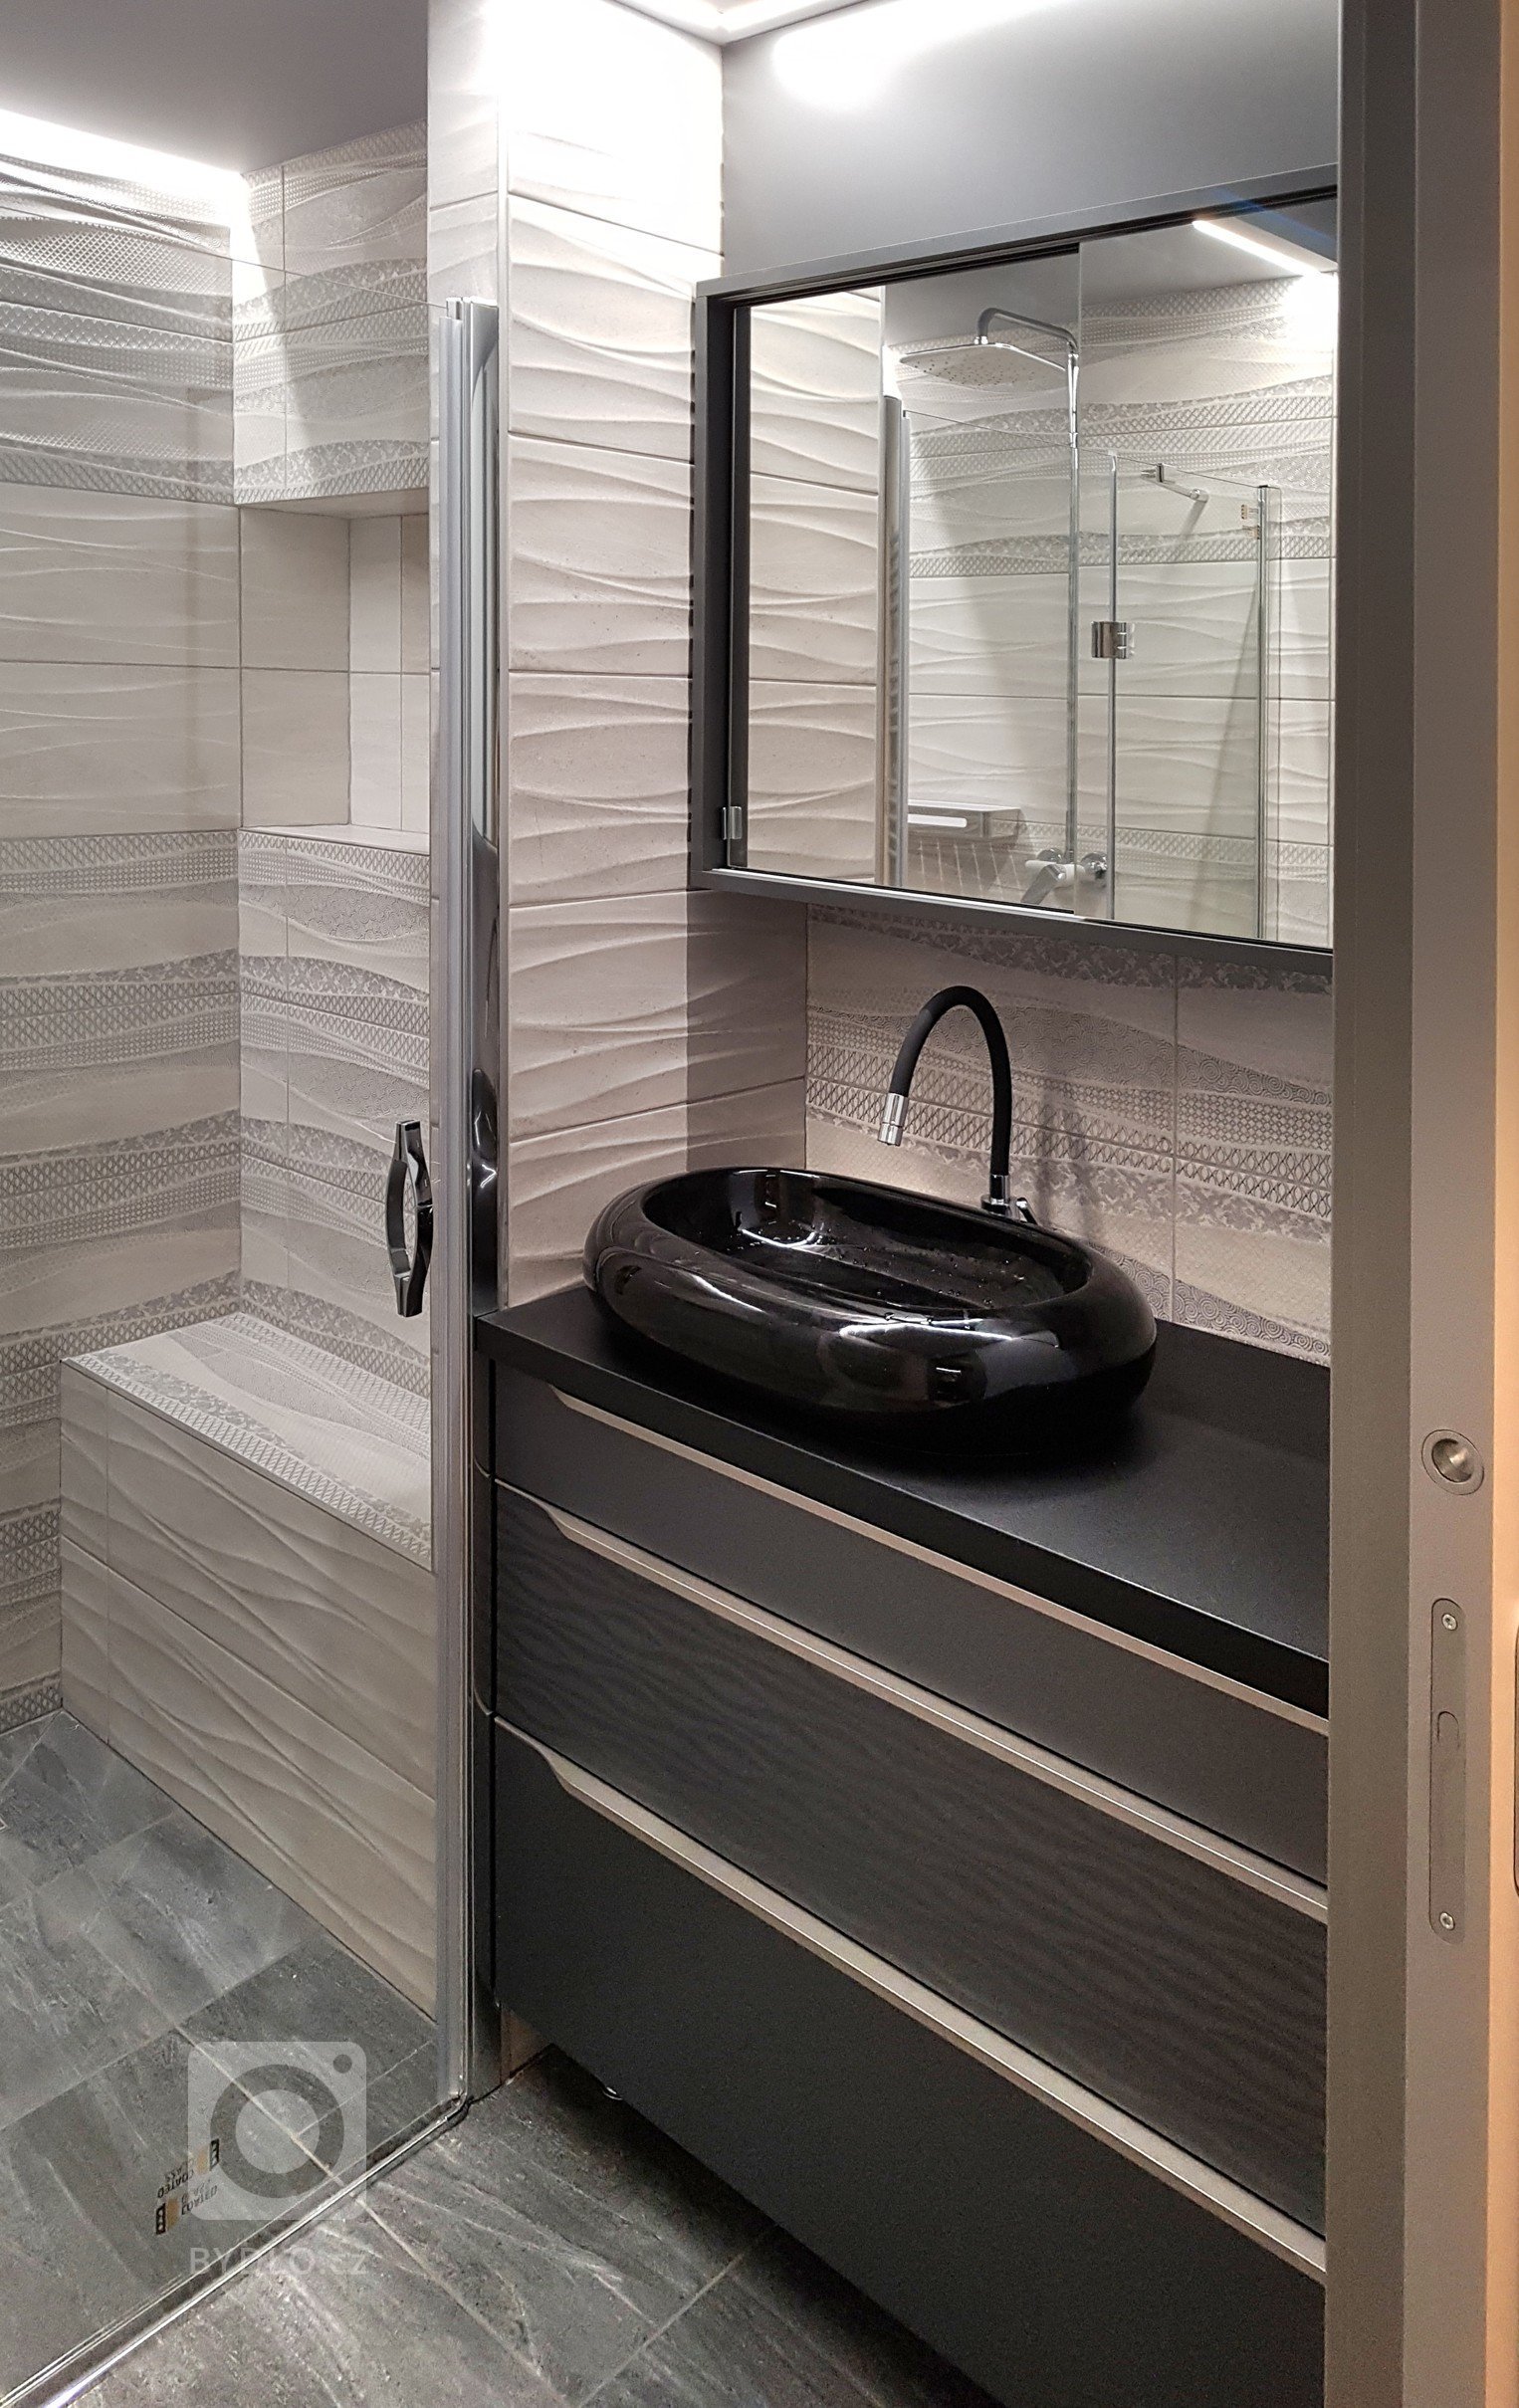 Malá koupelna z prostoru na konci úzké chodby. V koupelně je přes celou šíři sprchový kout s vyzděnou lavičkou a odkládacím prostorem na šampony aj.